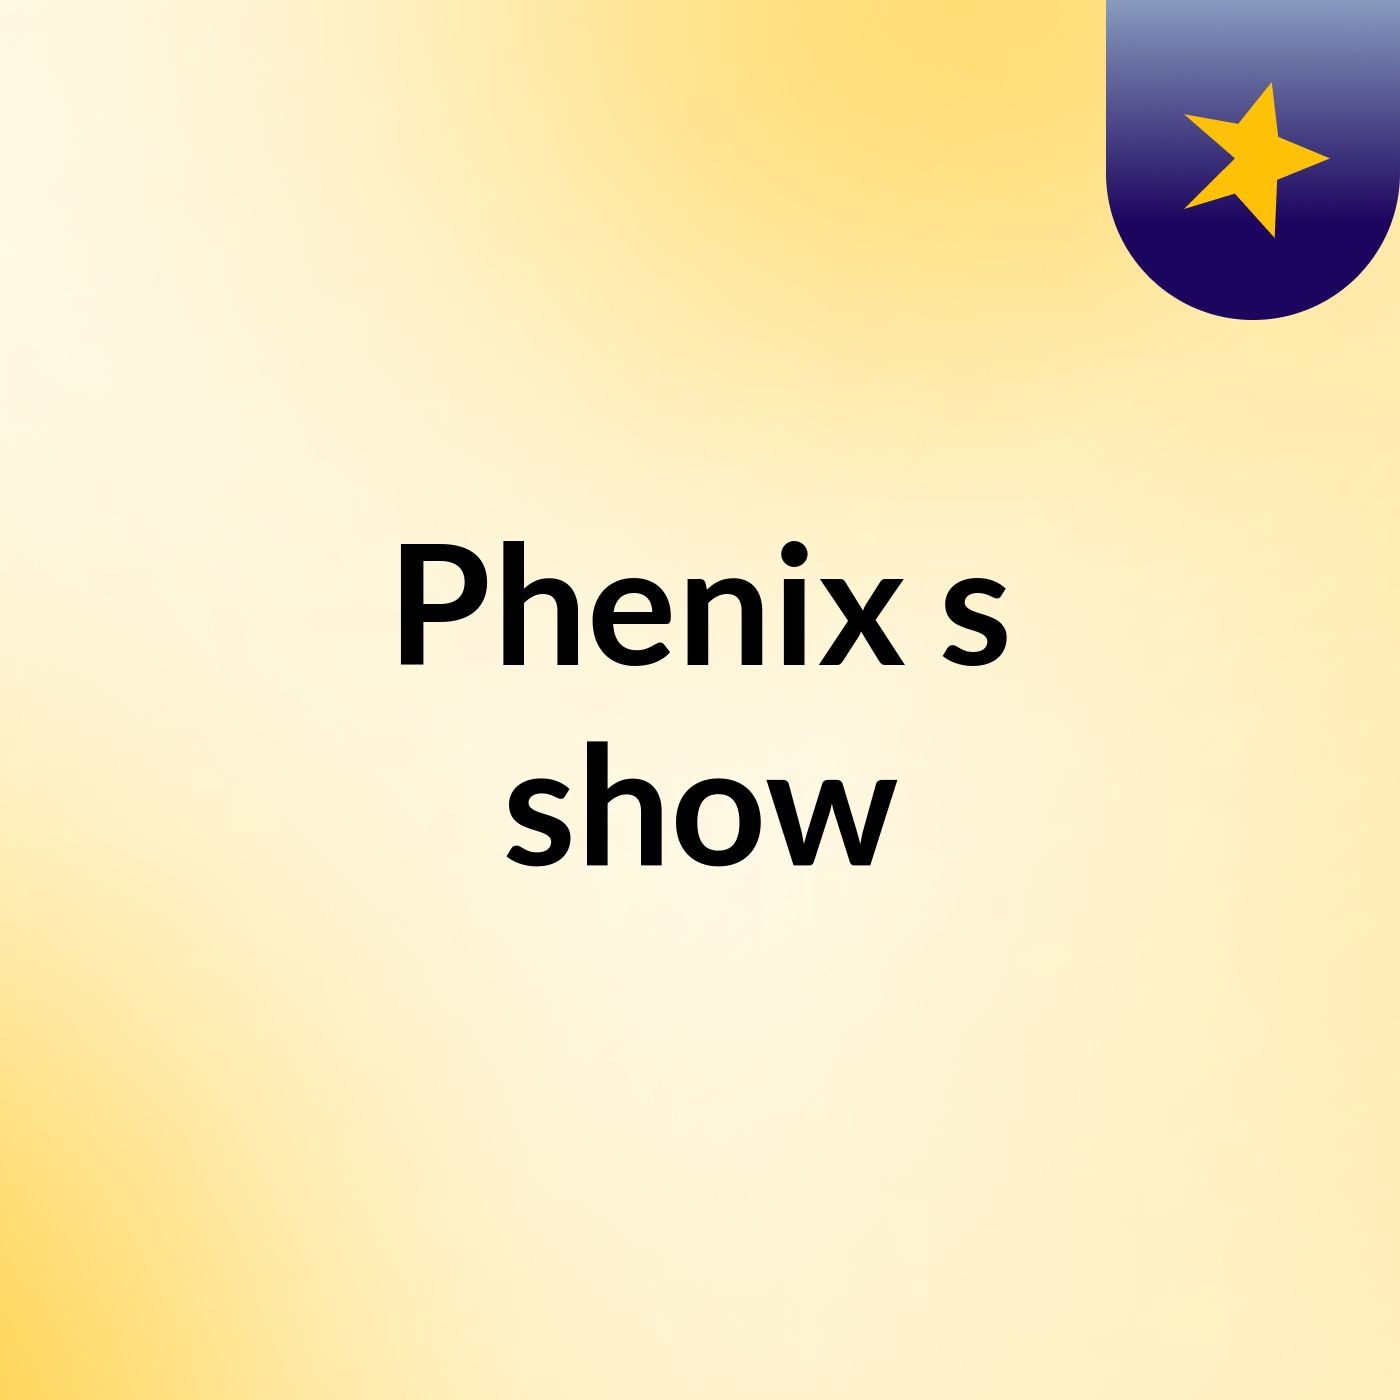 Phenix's show